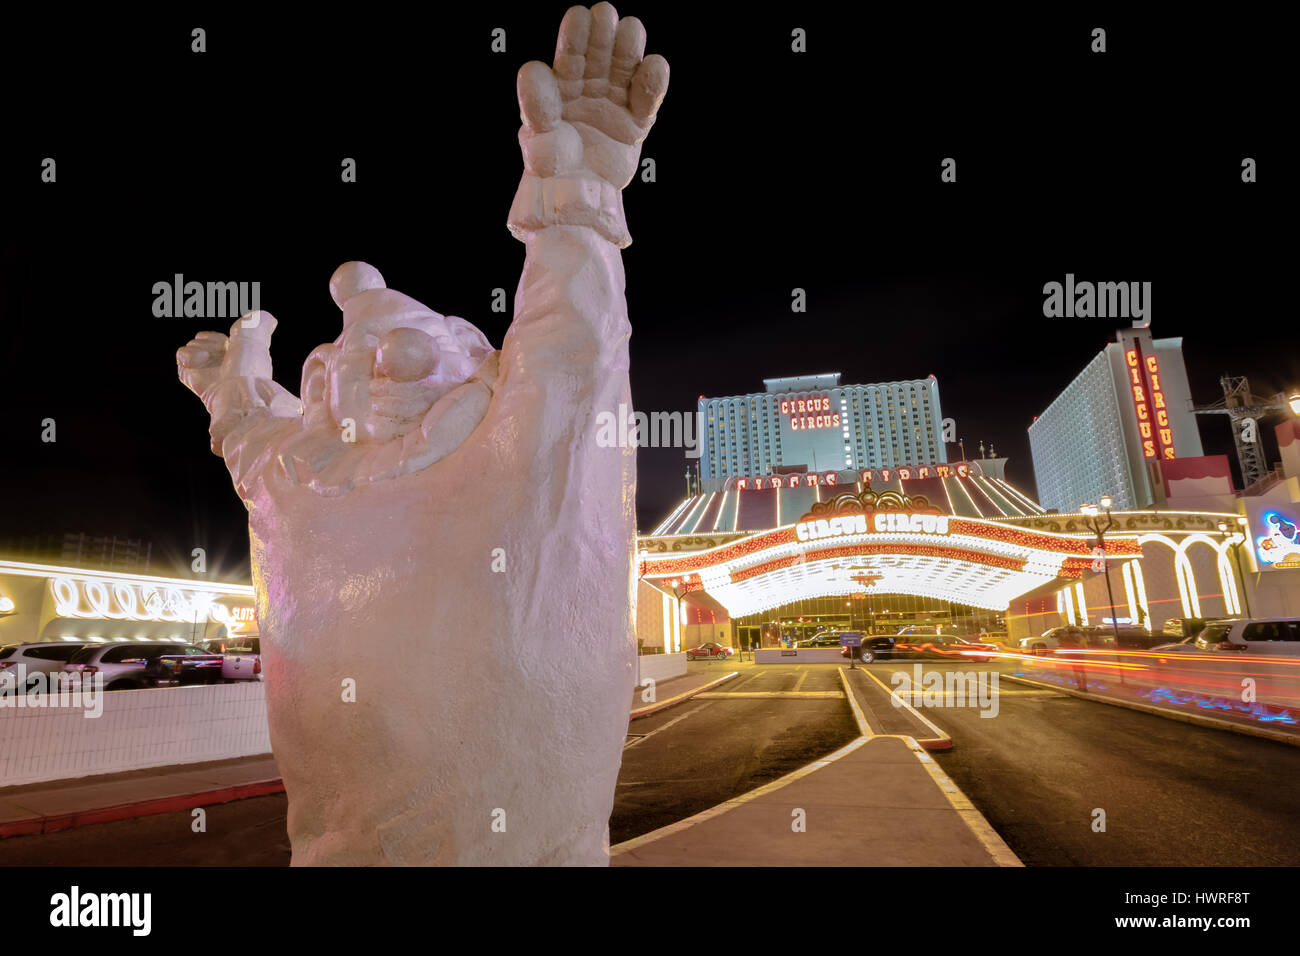 Clown at Circus Circus Hotel and Casino entrance at night - Las Vegas, Nevada, USA Stock Photo